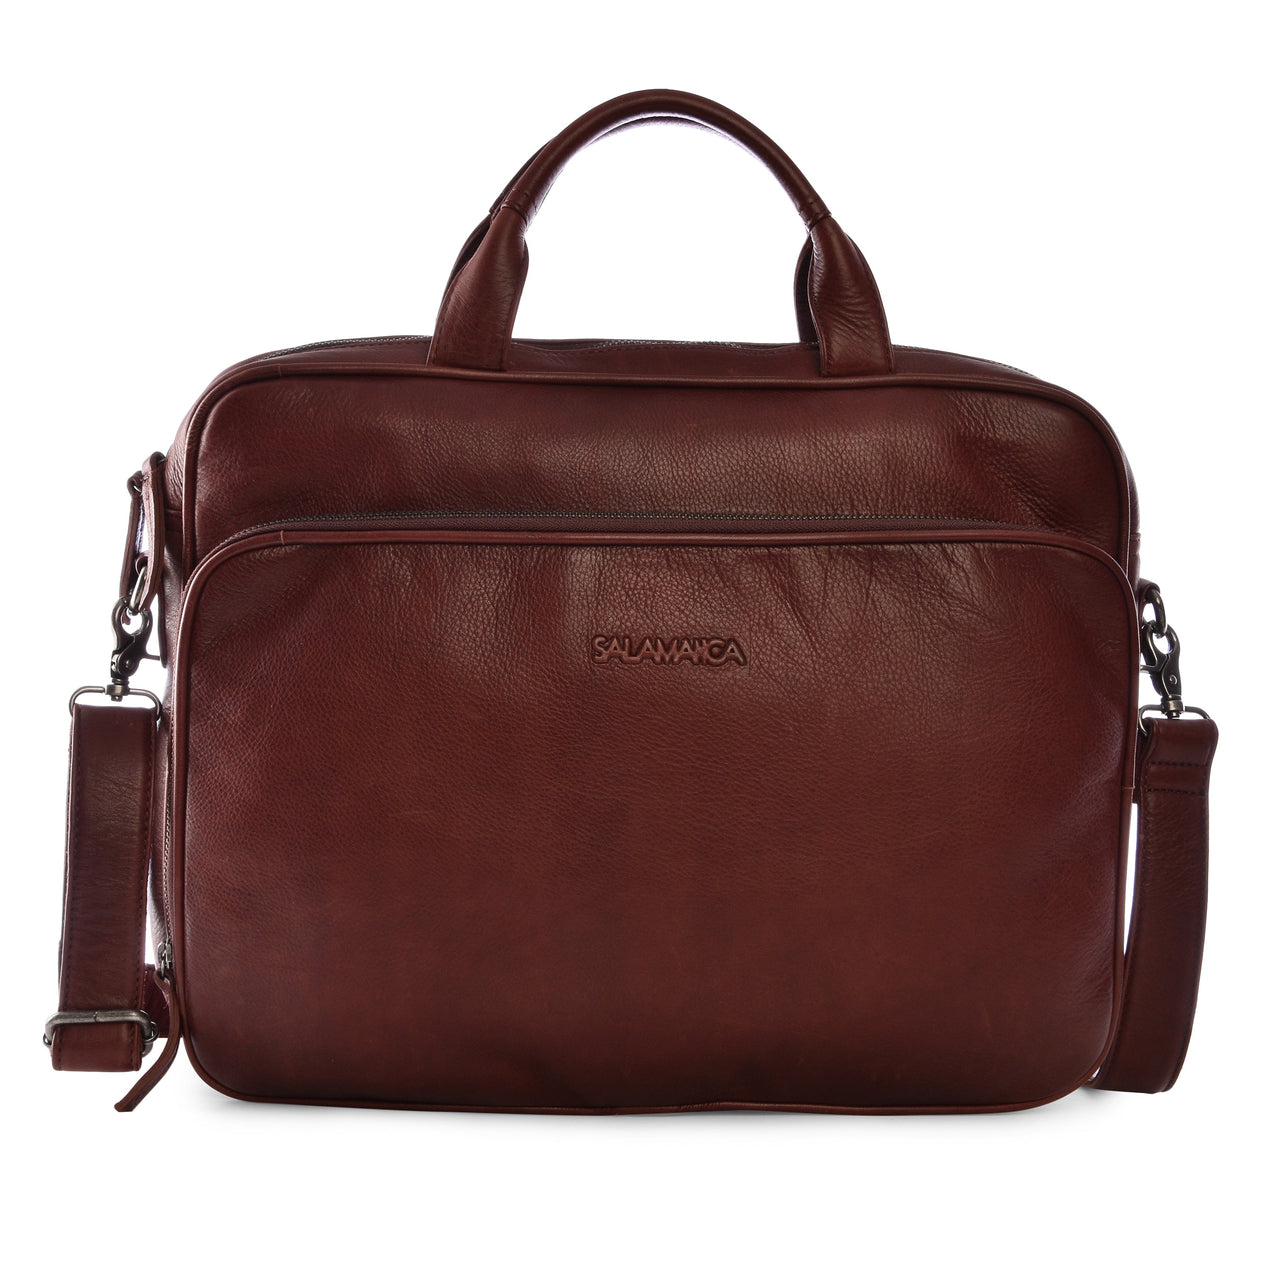 Steve Business Bag - Bordeaux - Laptop Bags